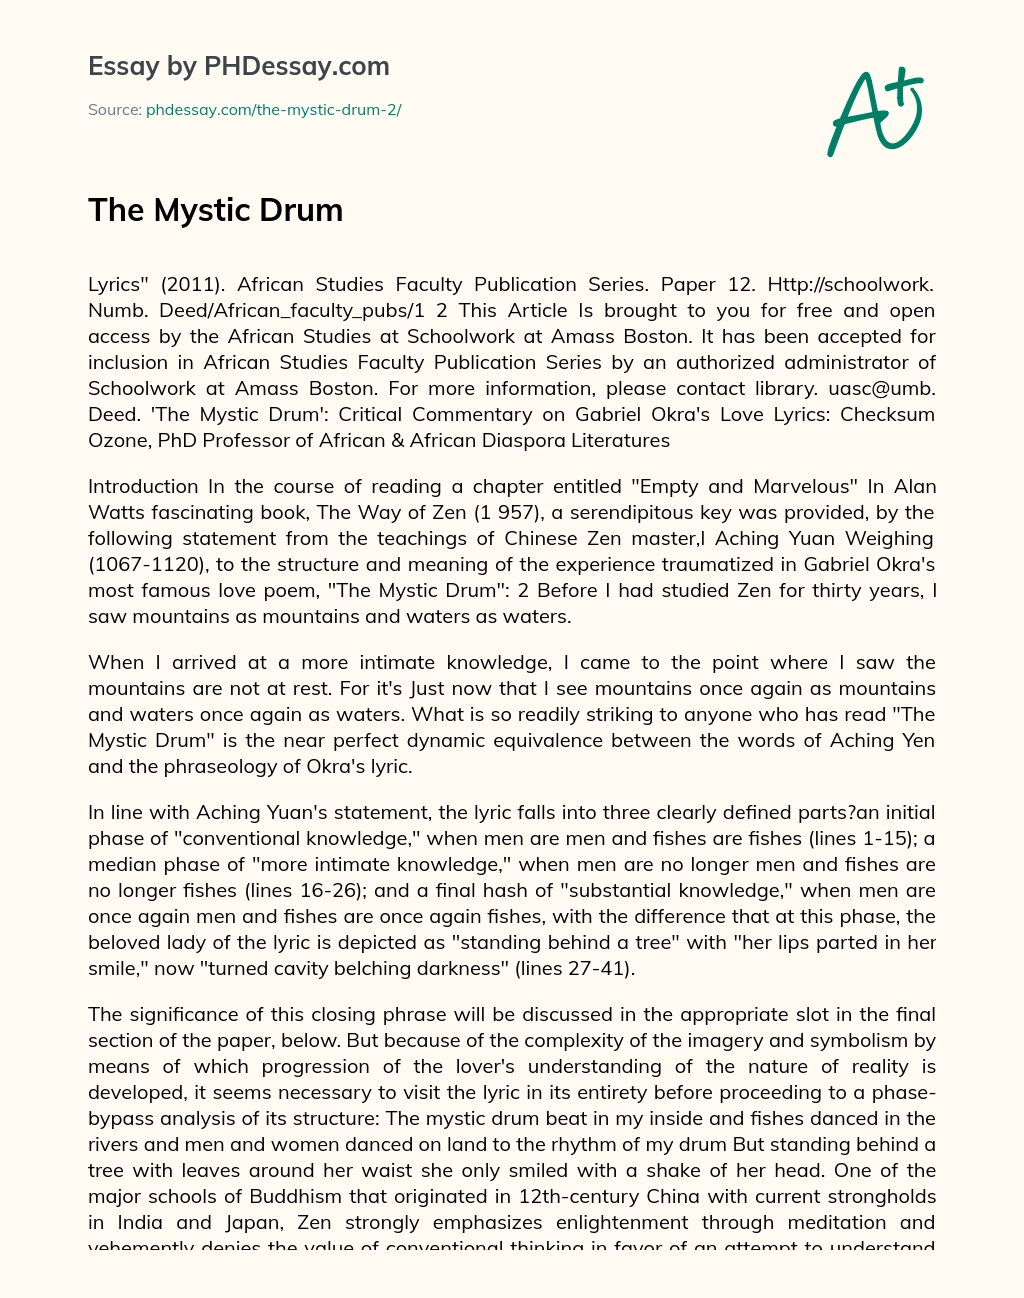 The Mystic Drum essay